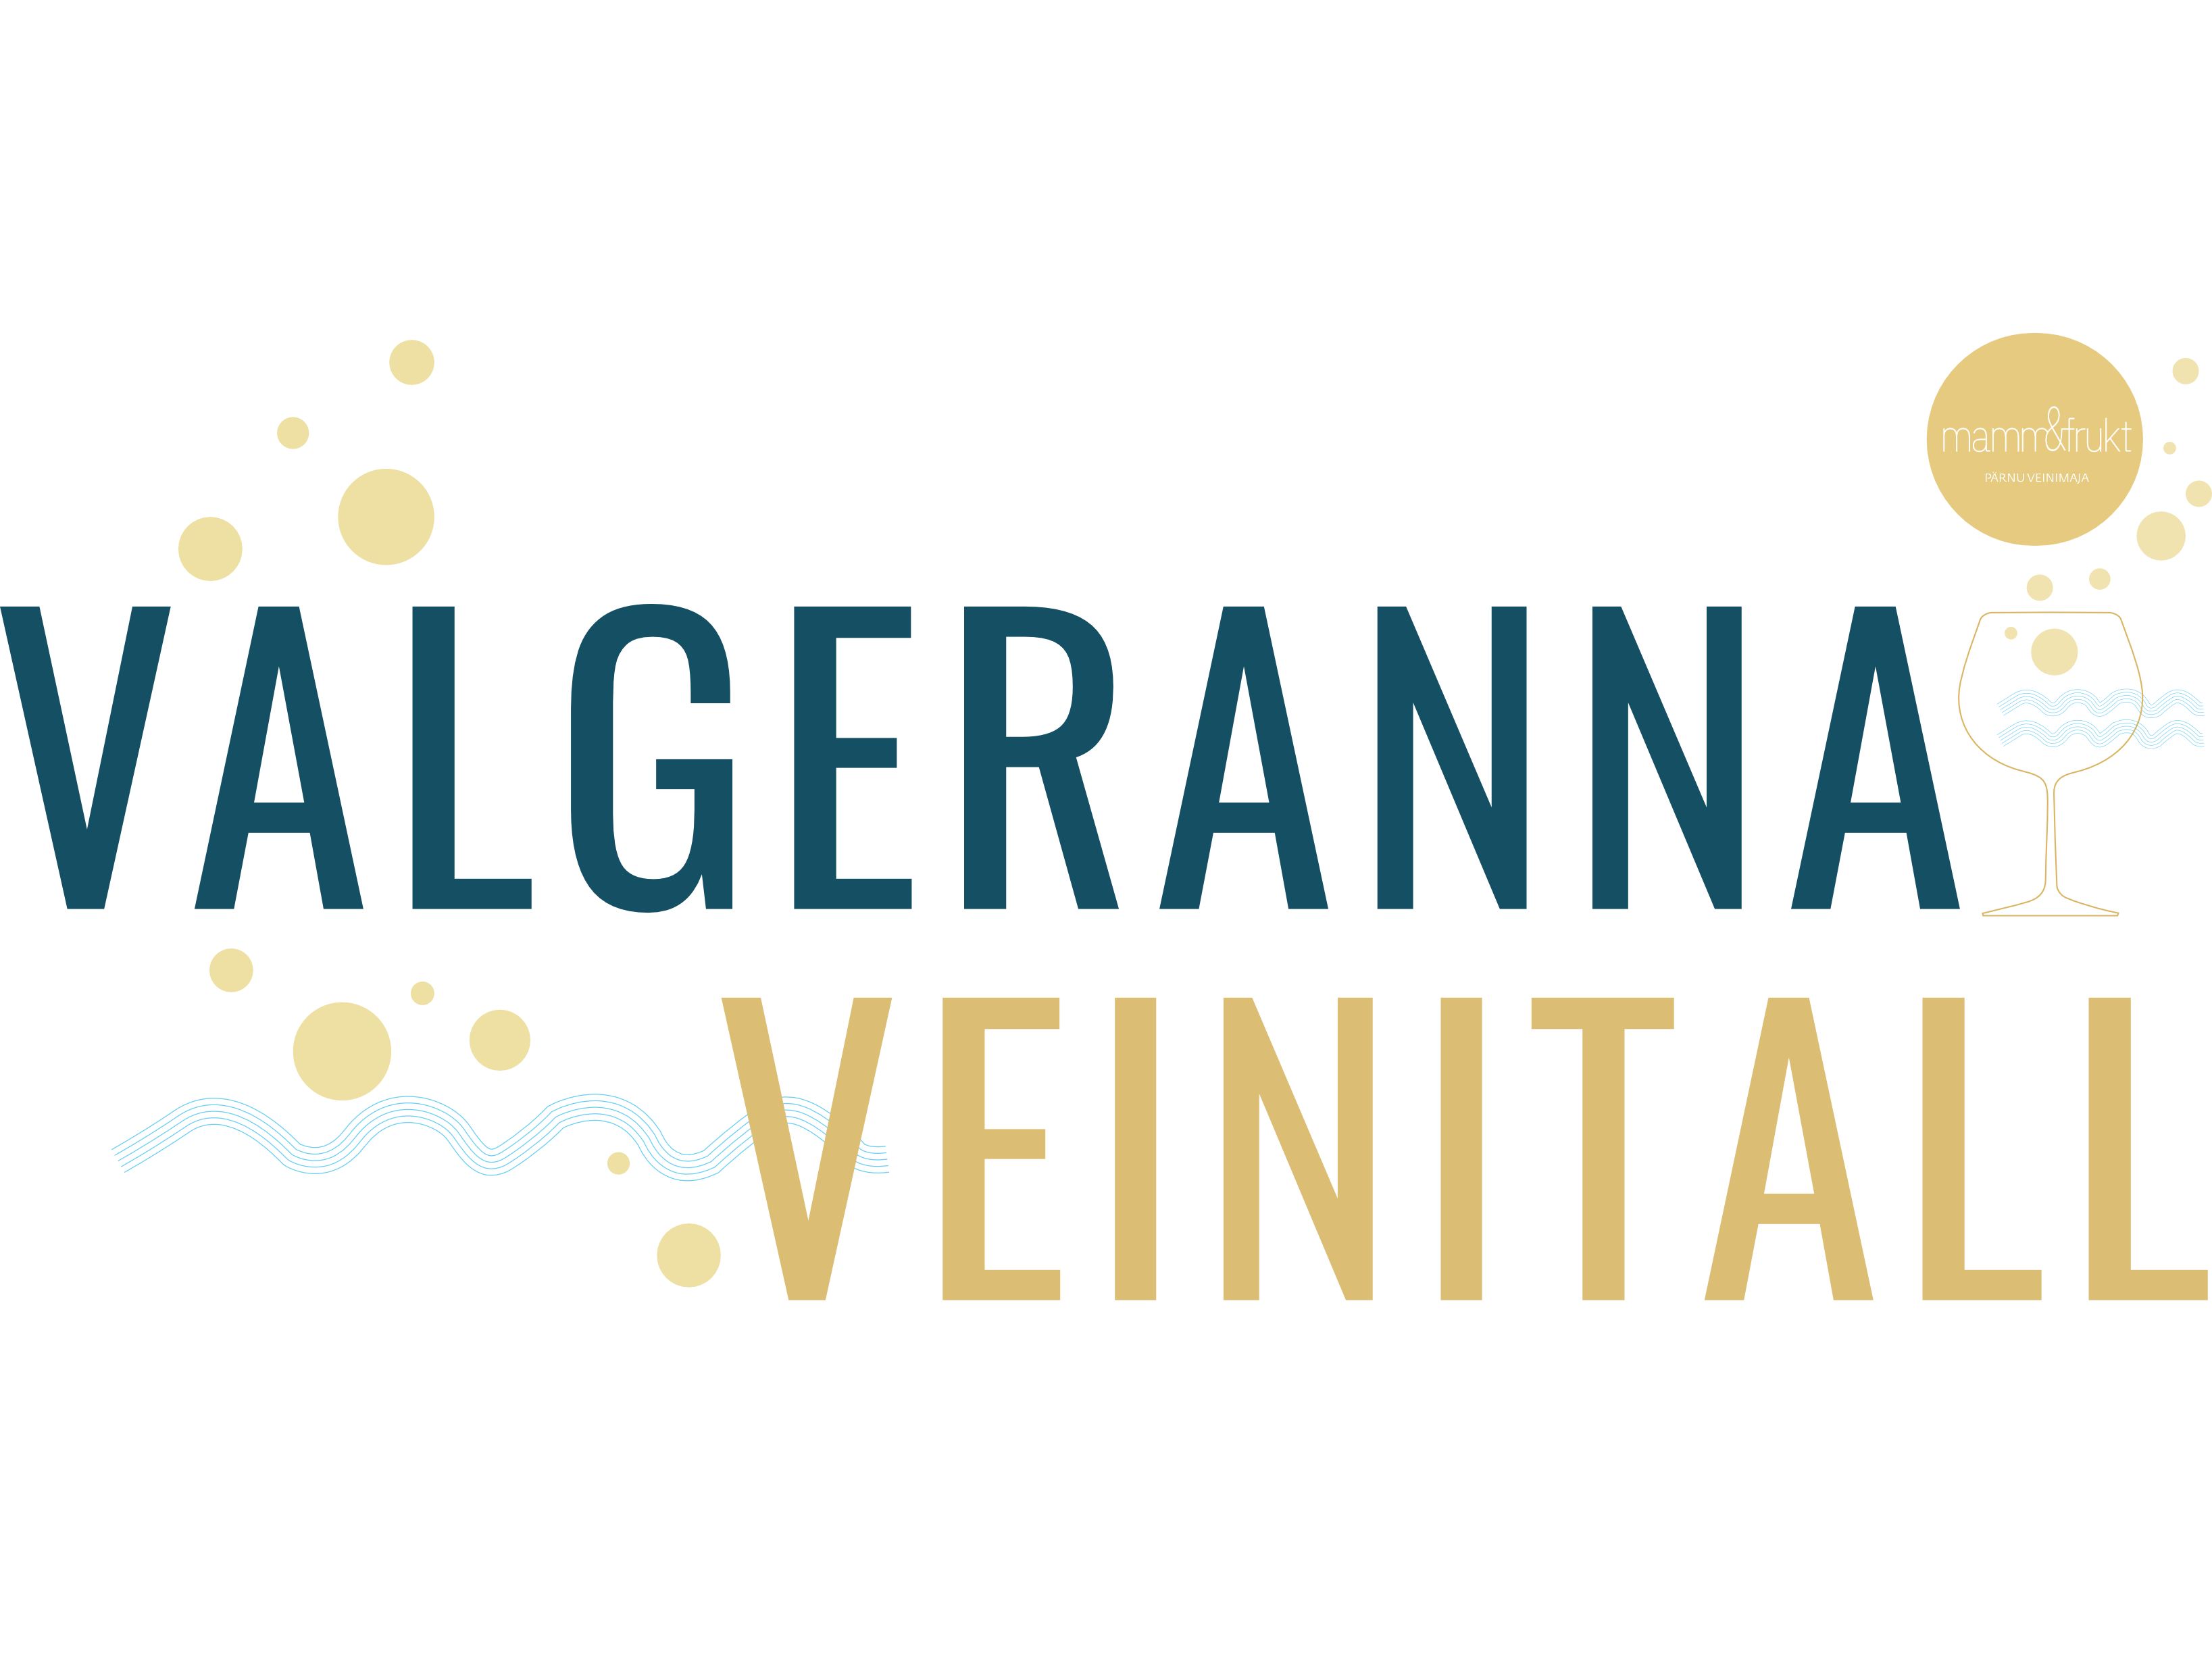 Valgeranna Veinitall